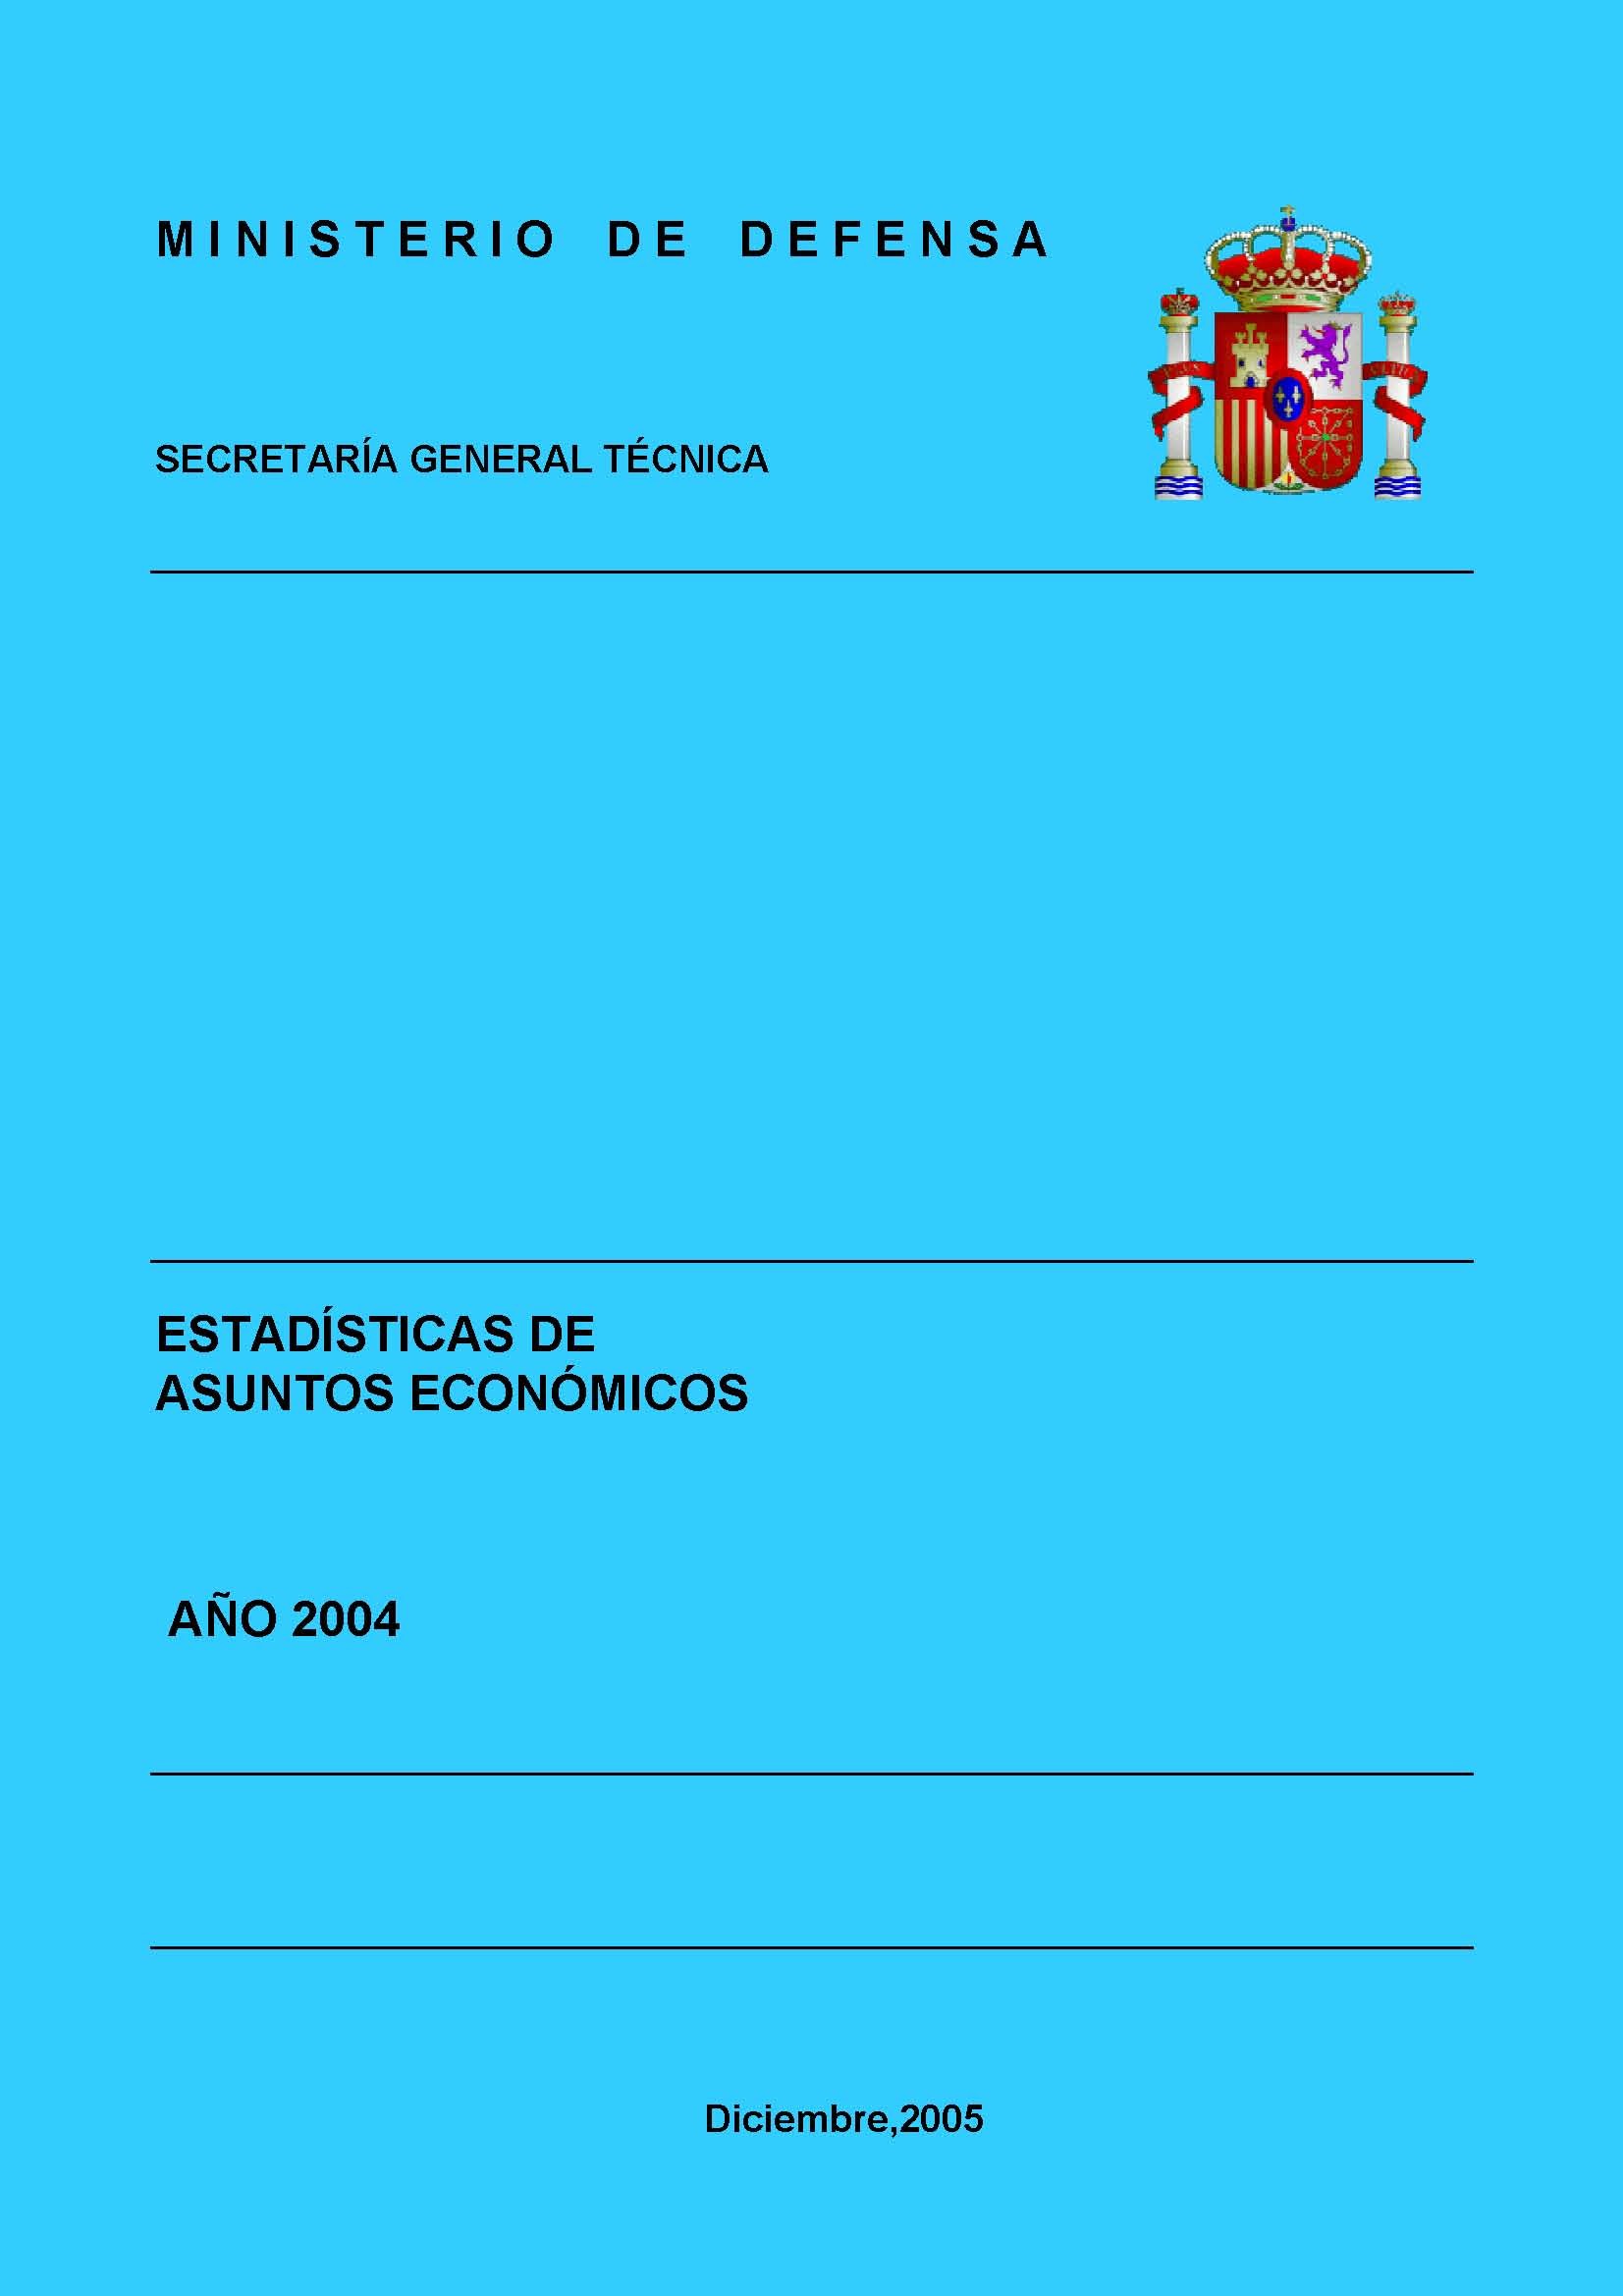 ESTADÍSTICA DE ASUNTOS ECONÓMICOS 2004